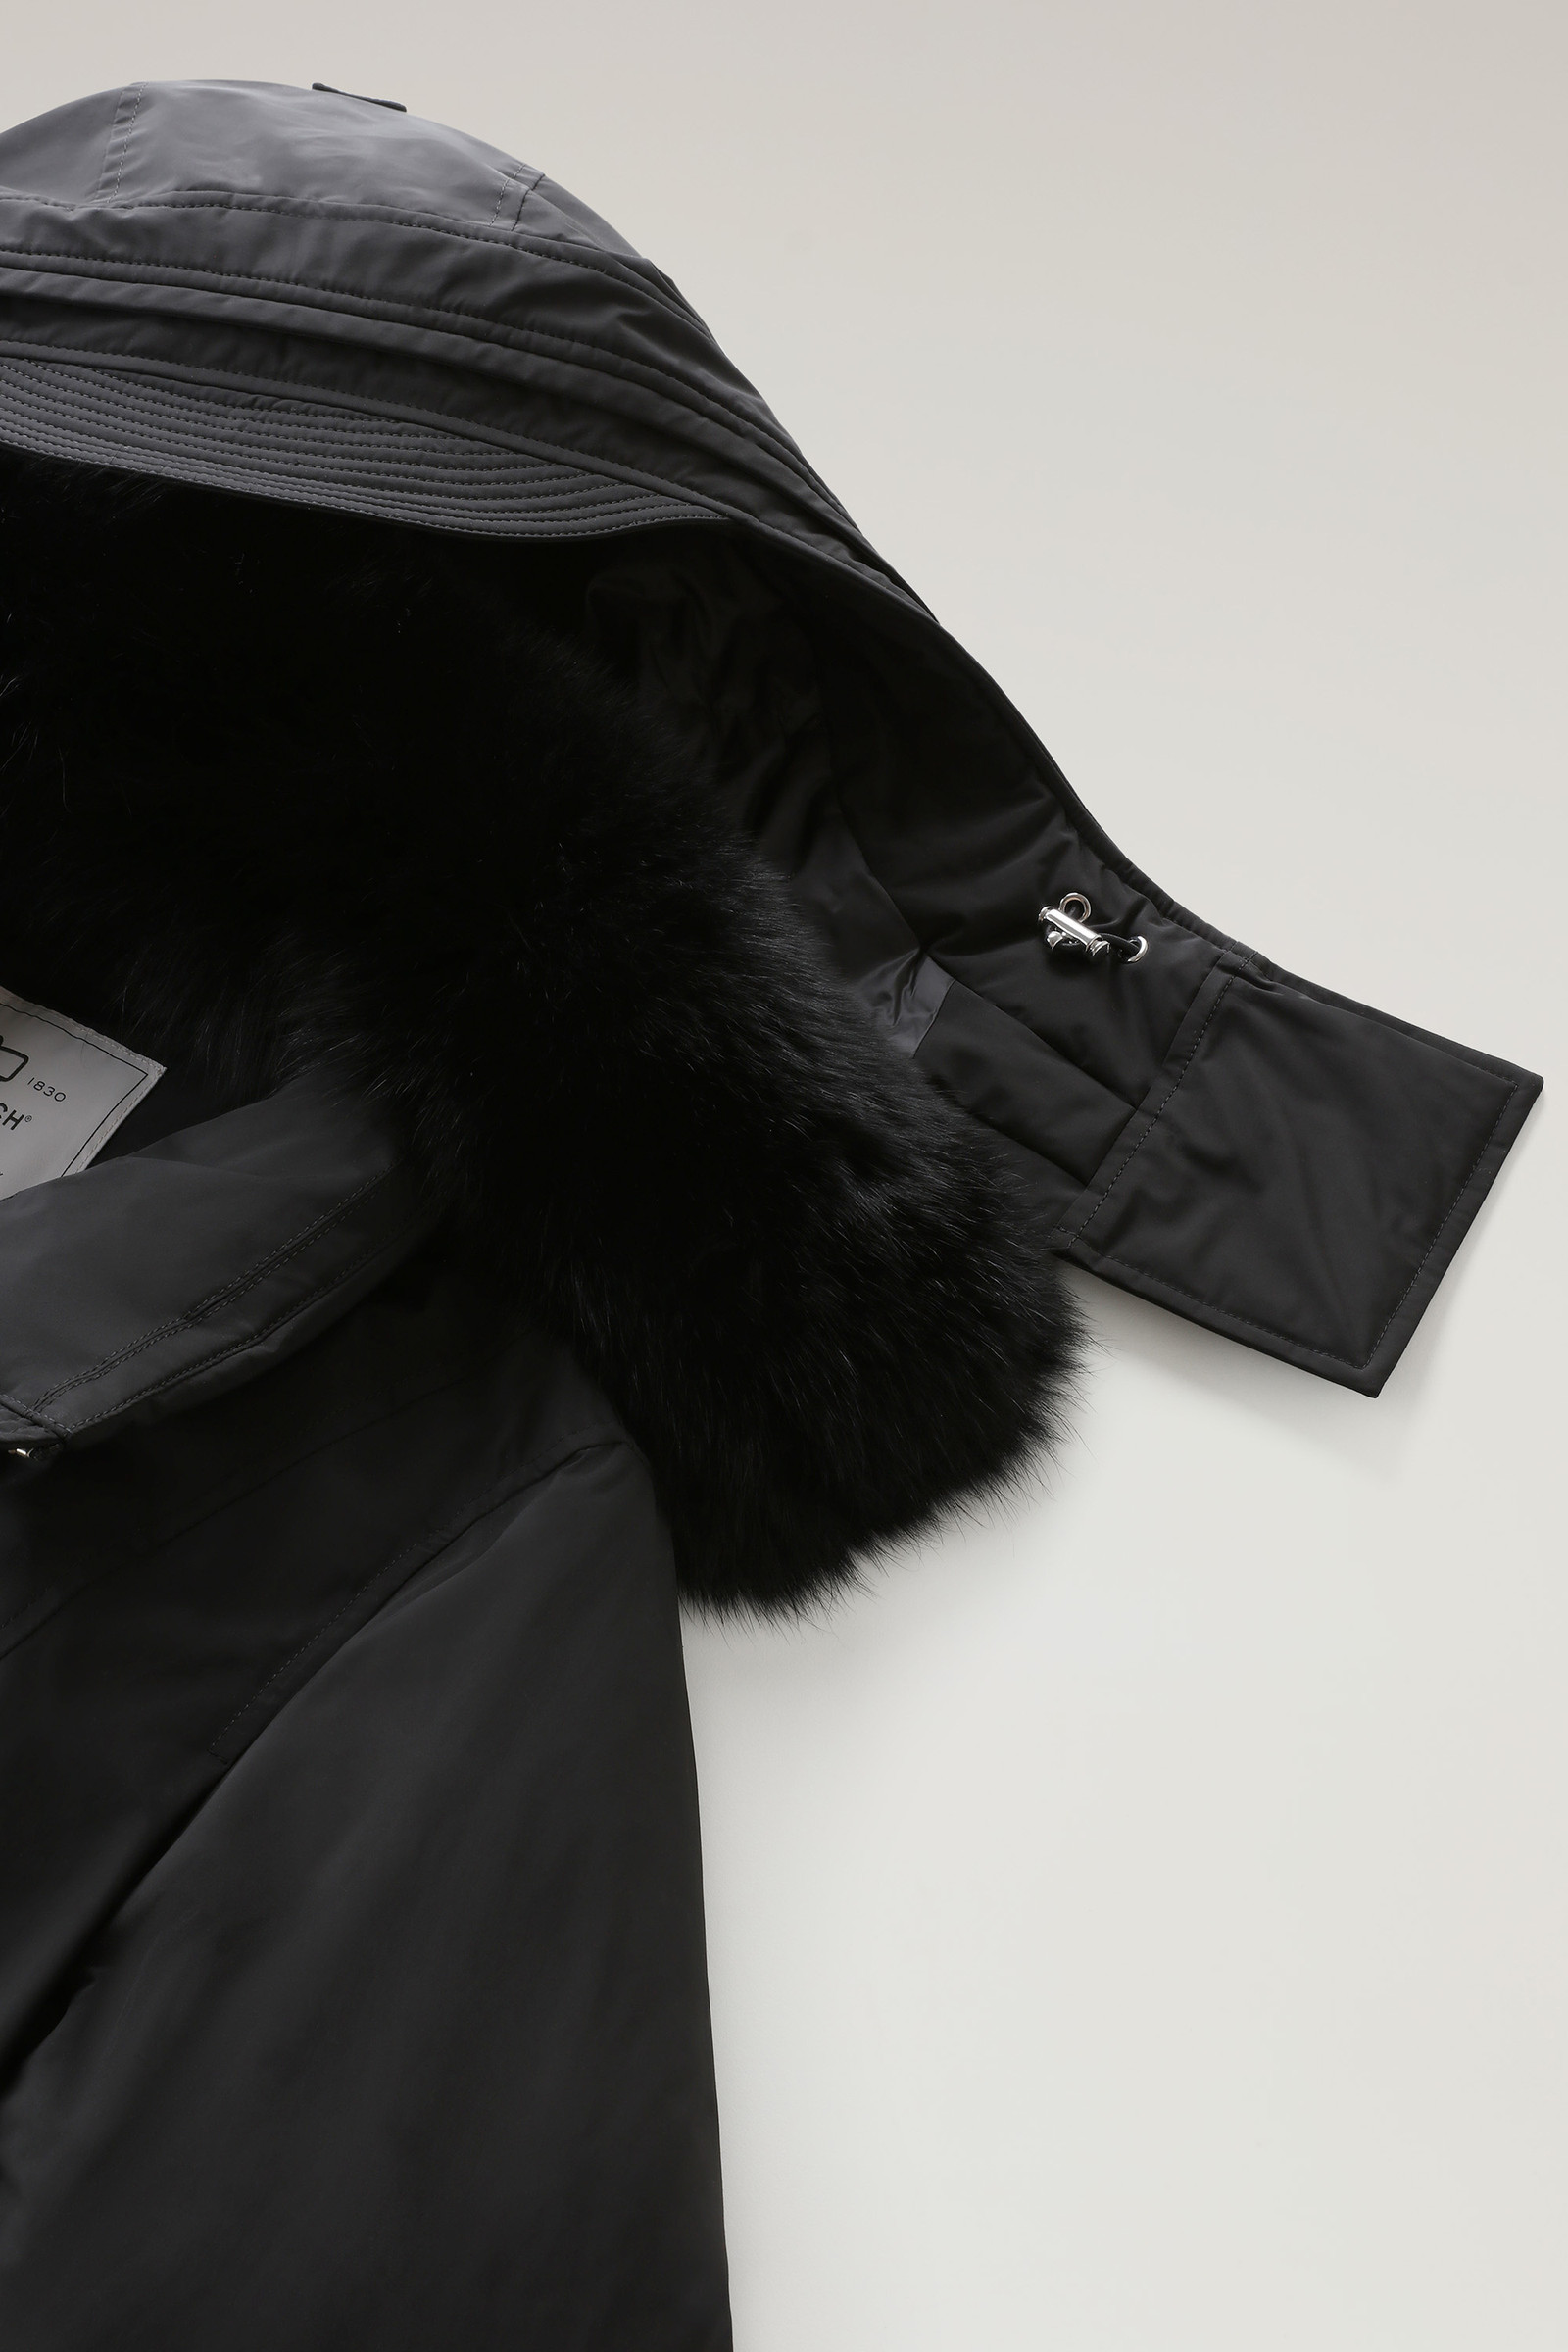 louis Vuitton black parka remobable hoodie silver fox trim men size 54/XL  (F2)